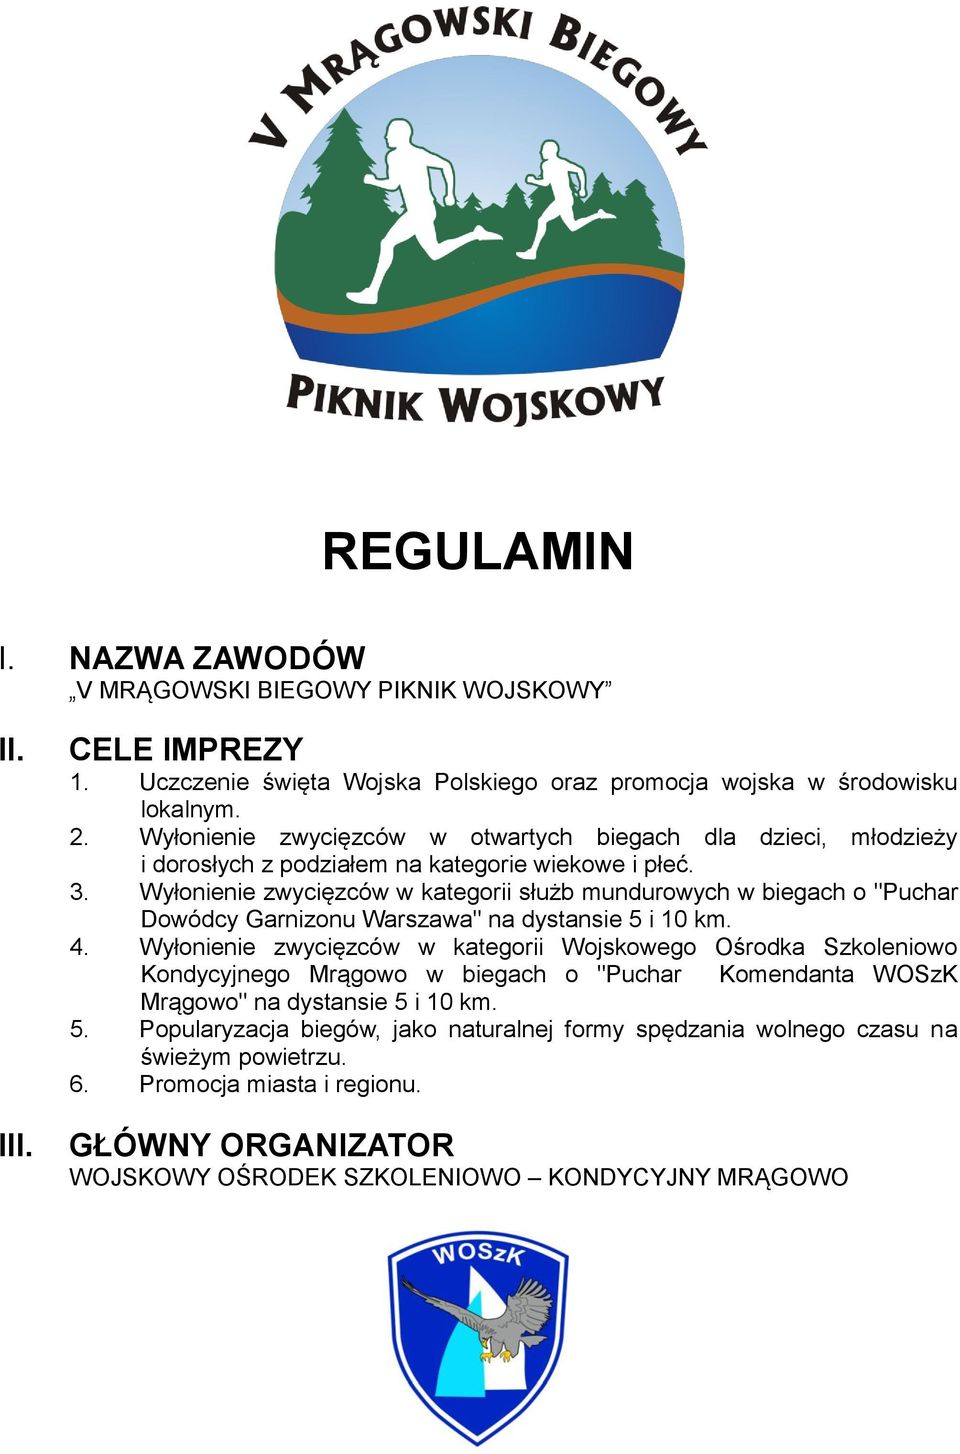 Wyłonienie zwycięzców w kategorii służb mundurowych w biegach o "Puchar Dowódcy Garnizonu Warszawa" na dystansie 5 i 10 km. 4.